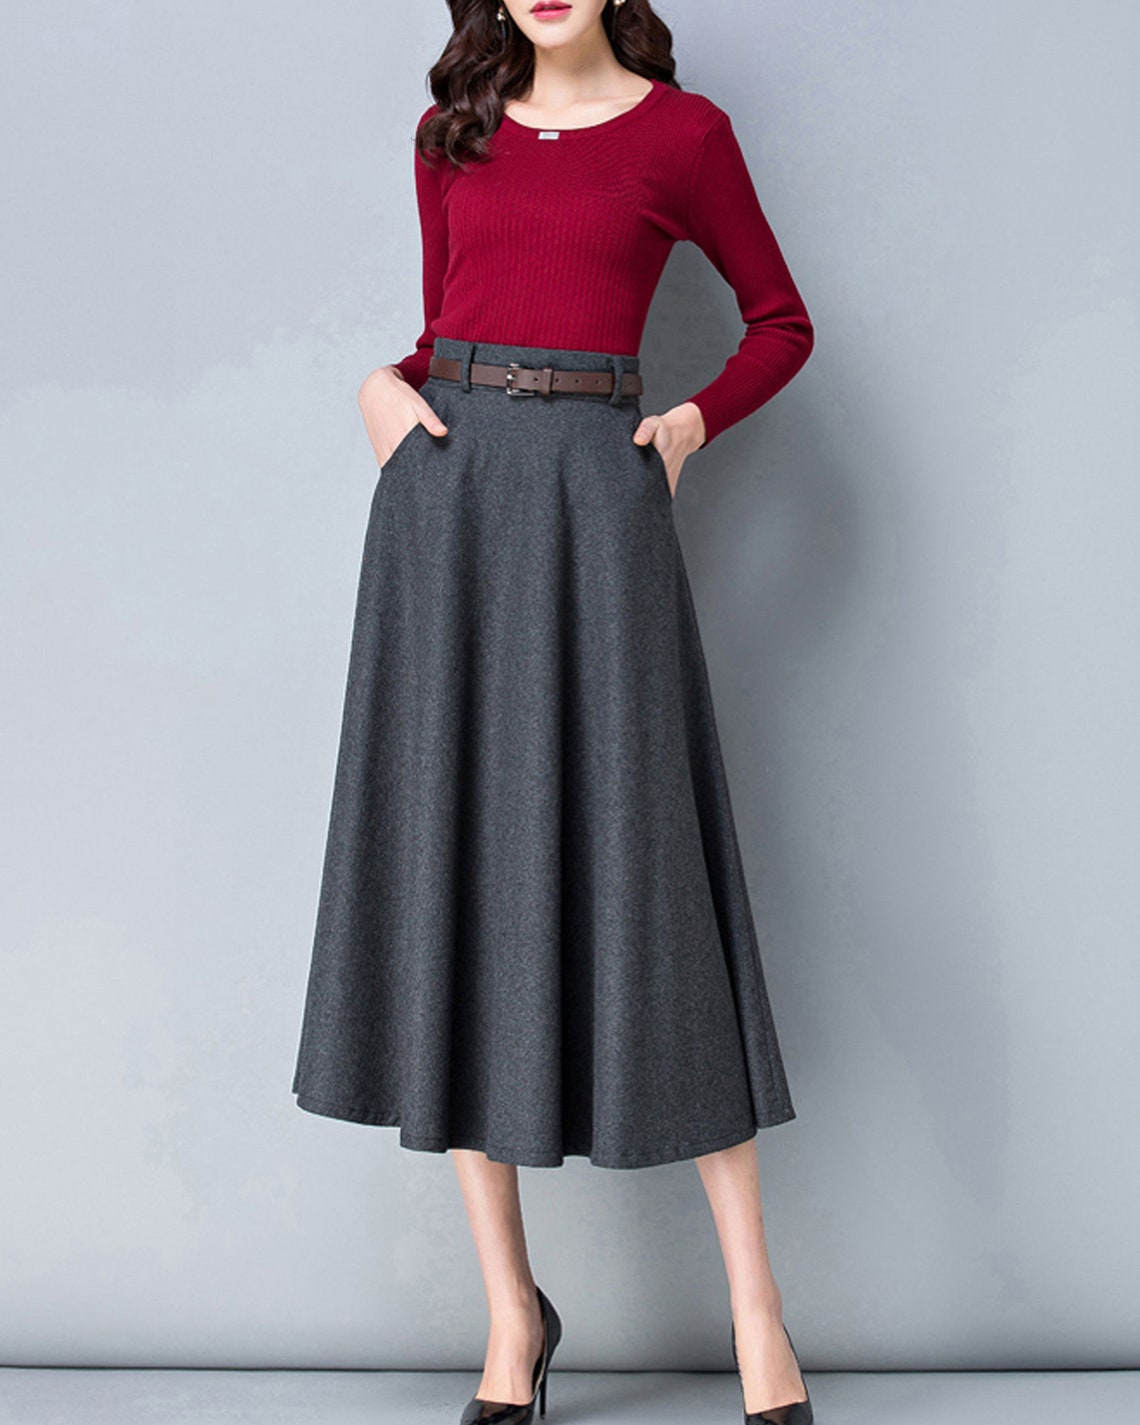 Wool Skirt Midi Skirt Winter Skirt Dark Gray Skirt Long - Etsy